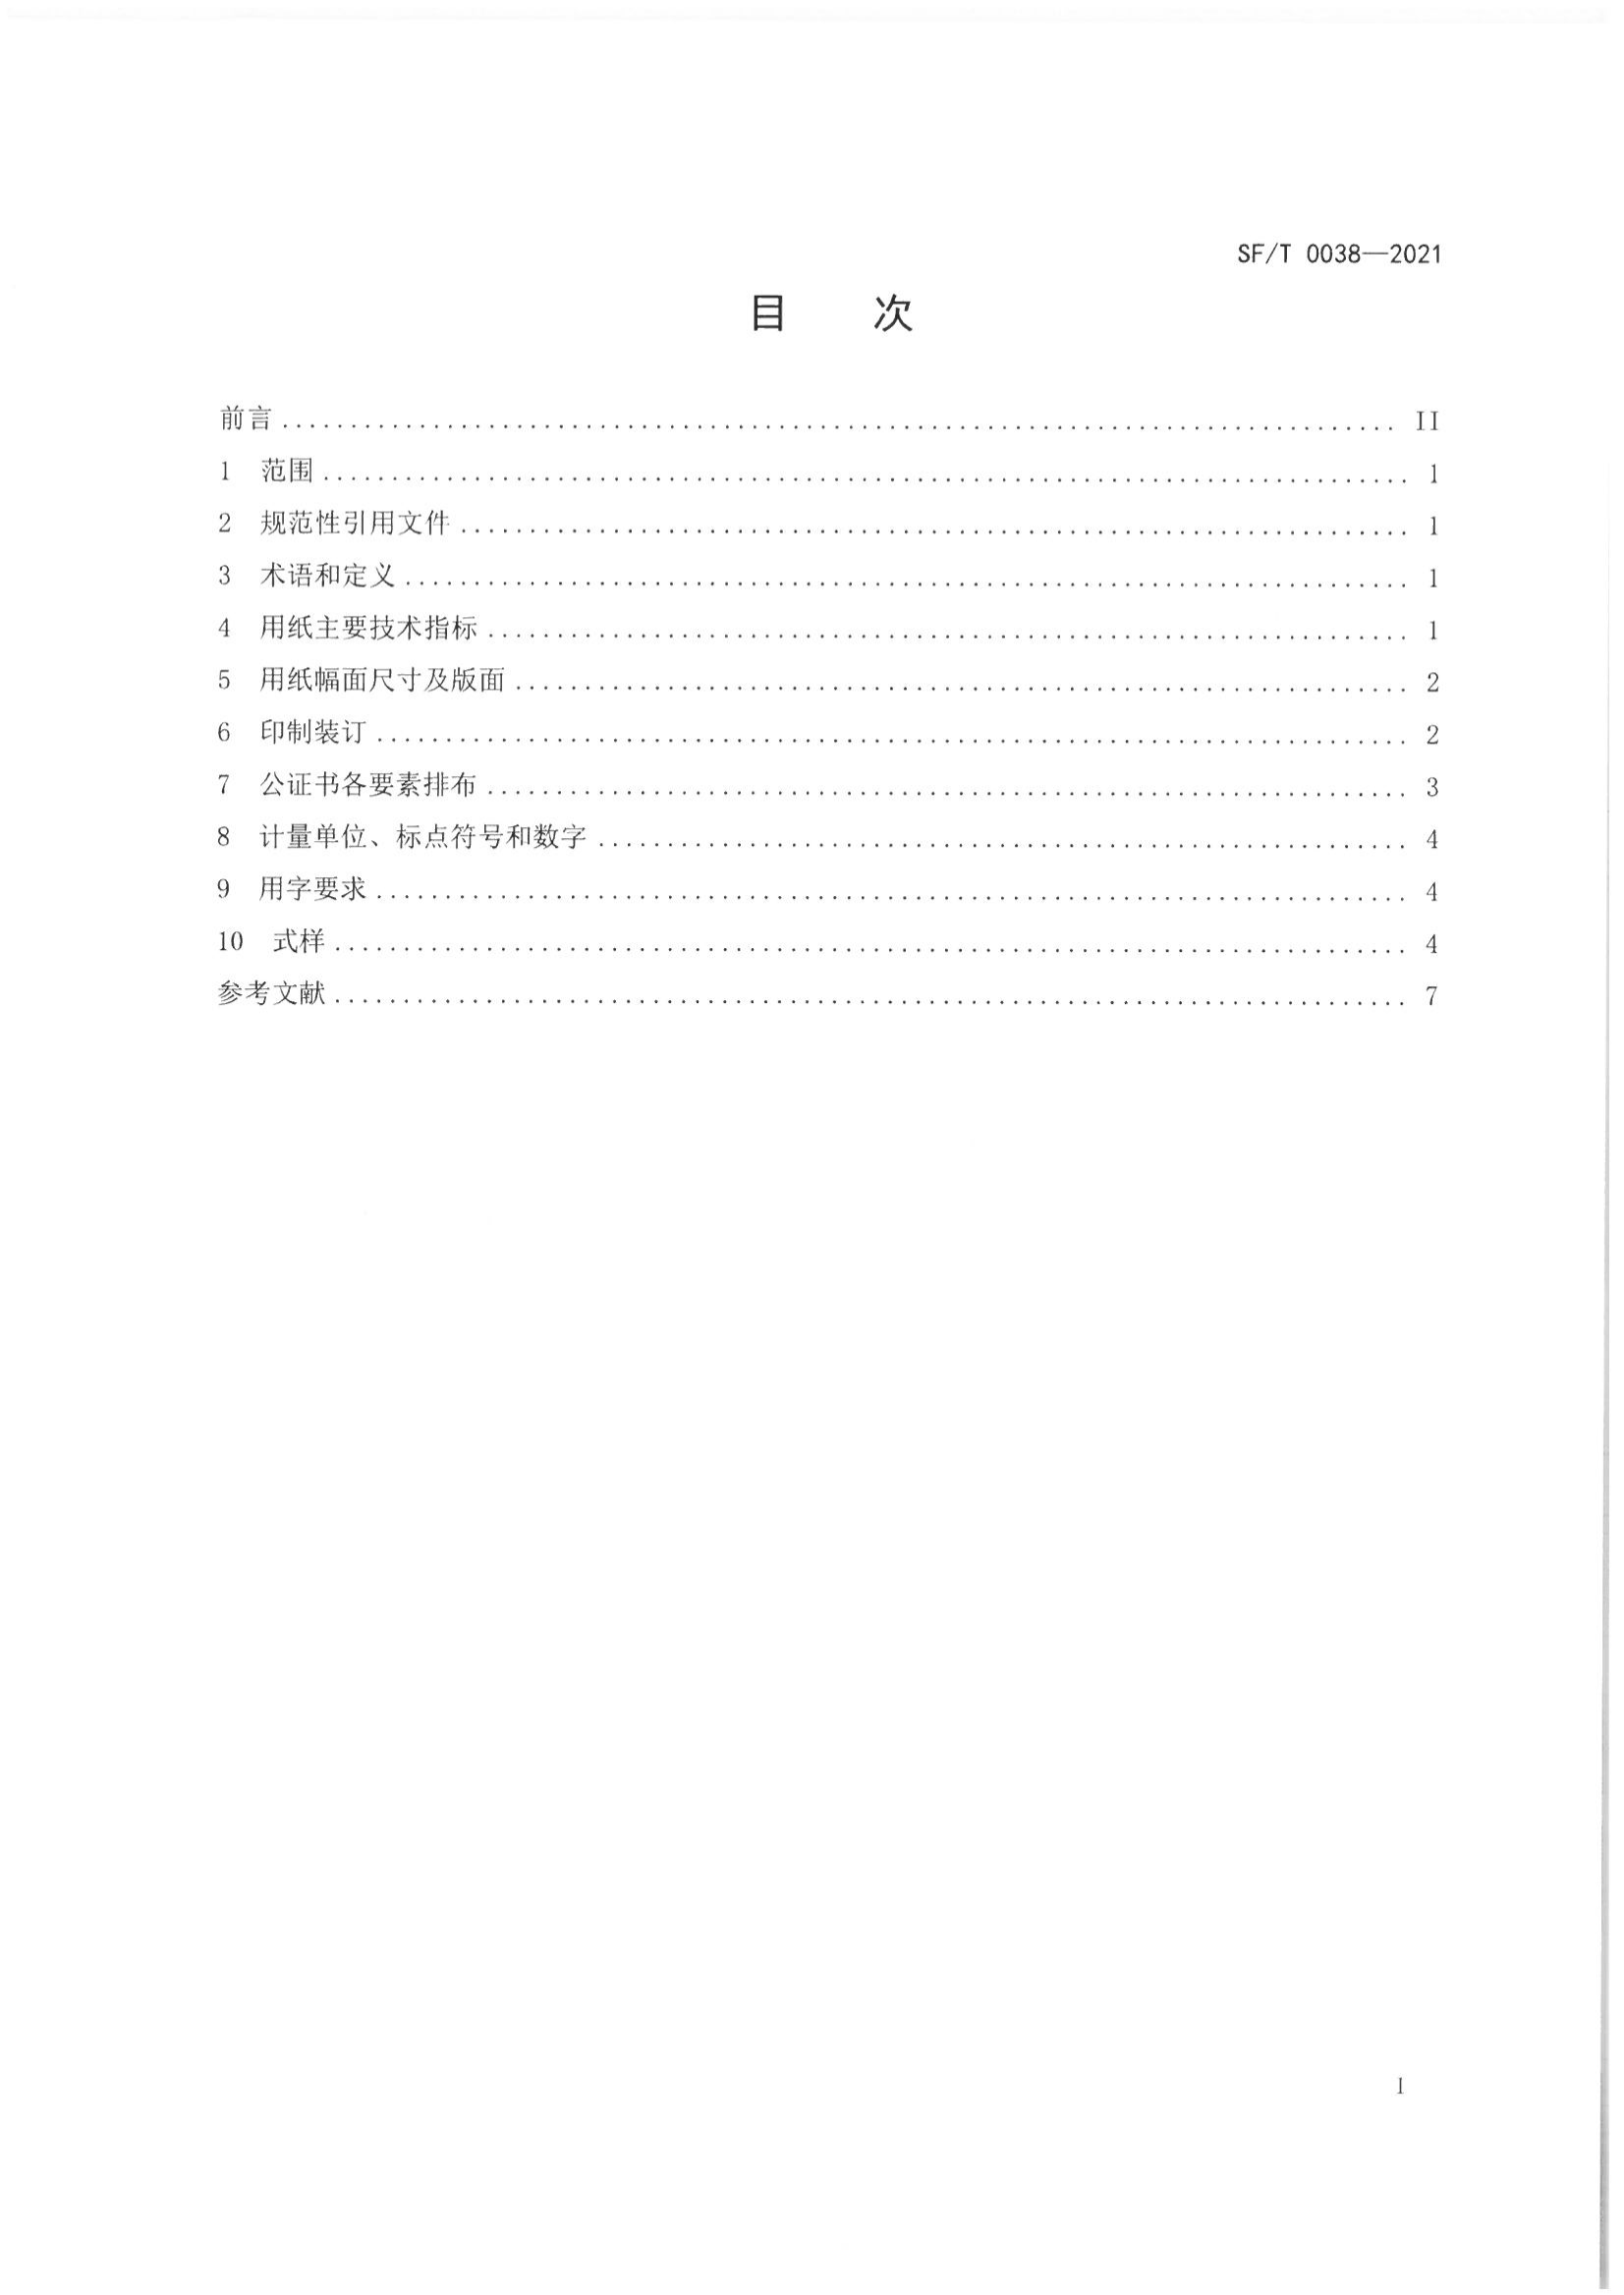 京公协字【2021】23号 北京市公证协会关于印发《公证书制作规范（SFT0038-2021）》（修订）的通知_03